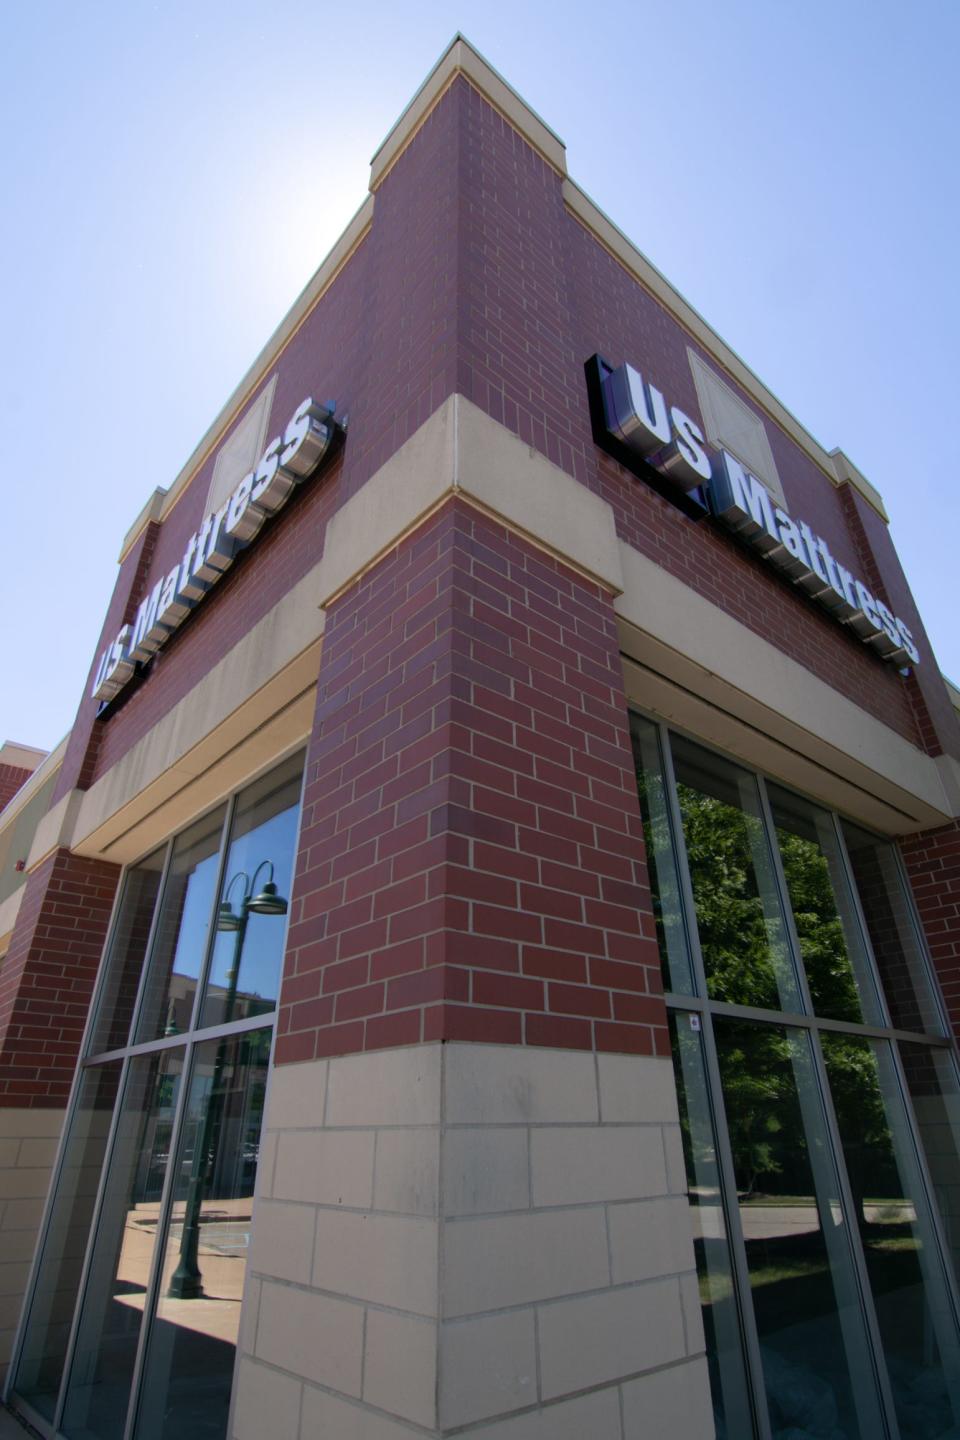 US-Mattress will open soon at Green Oak Village Place shopping center, shown Thursday, June 23, 2022.